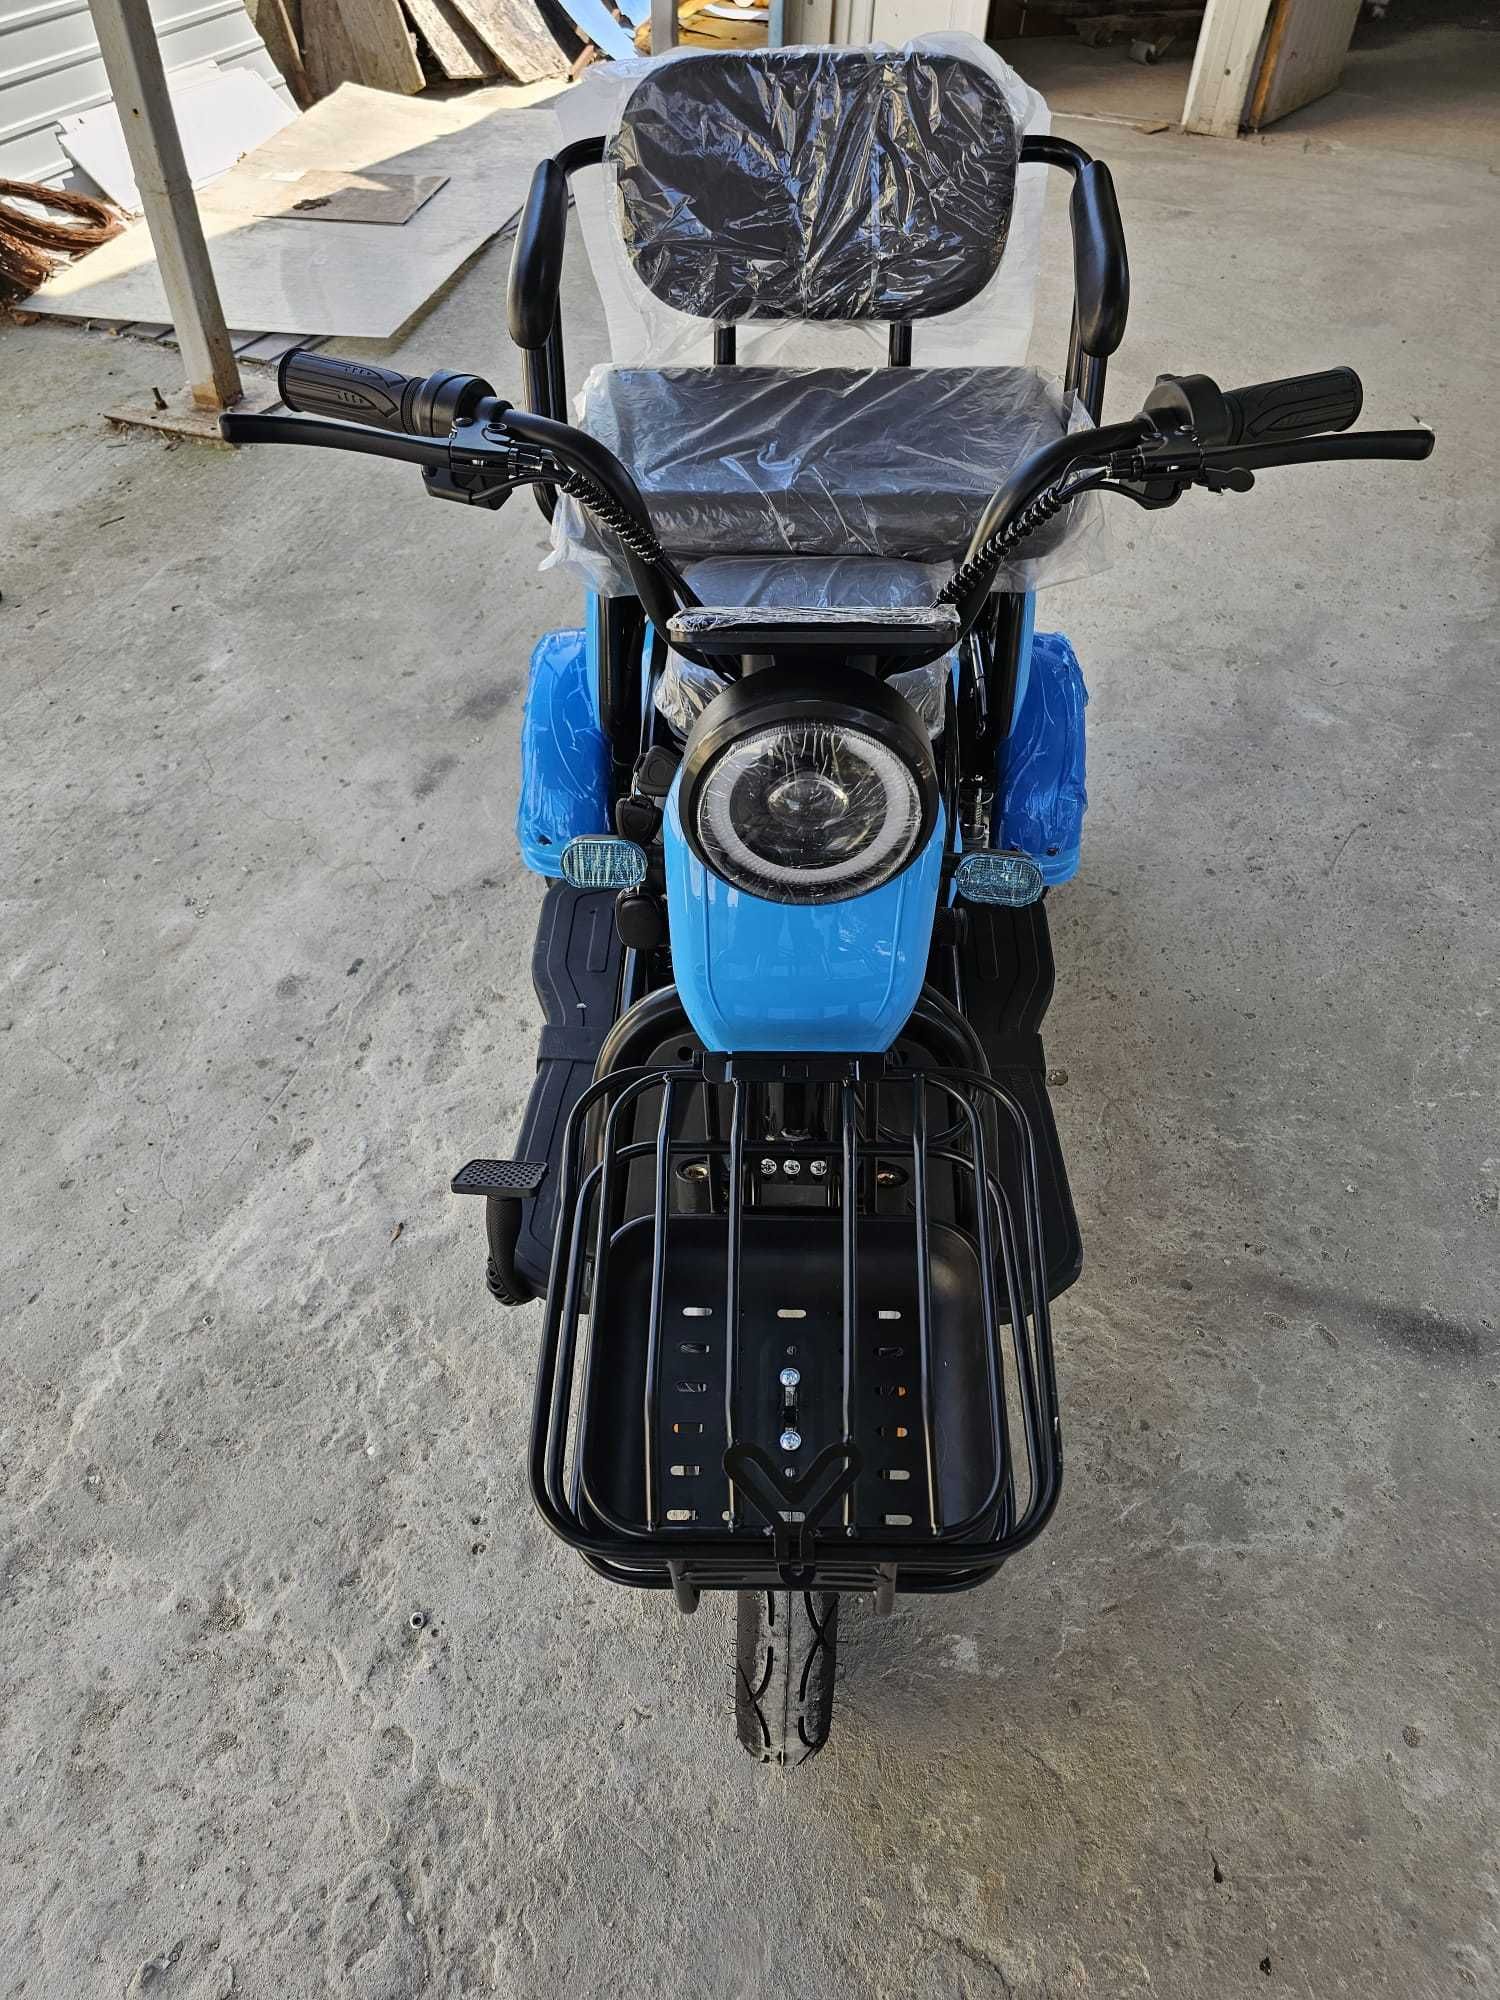 Tricicleta scuter electric -26%! Livrare cu verificare, garantie 2 ani